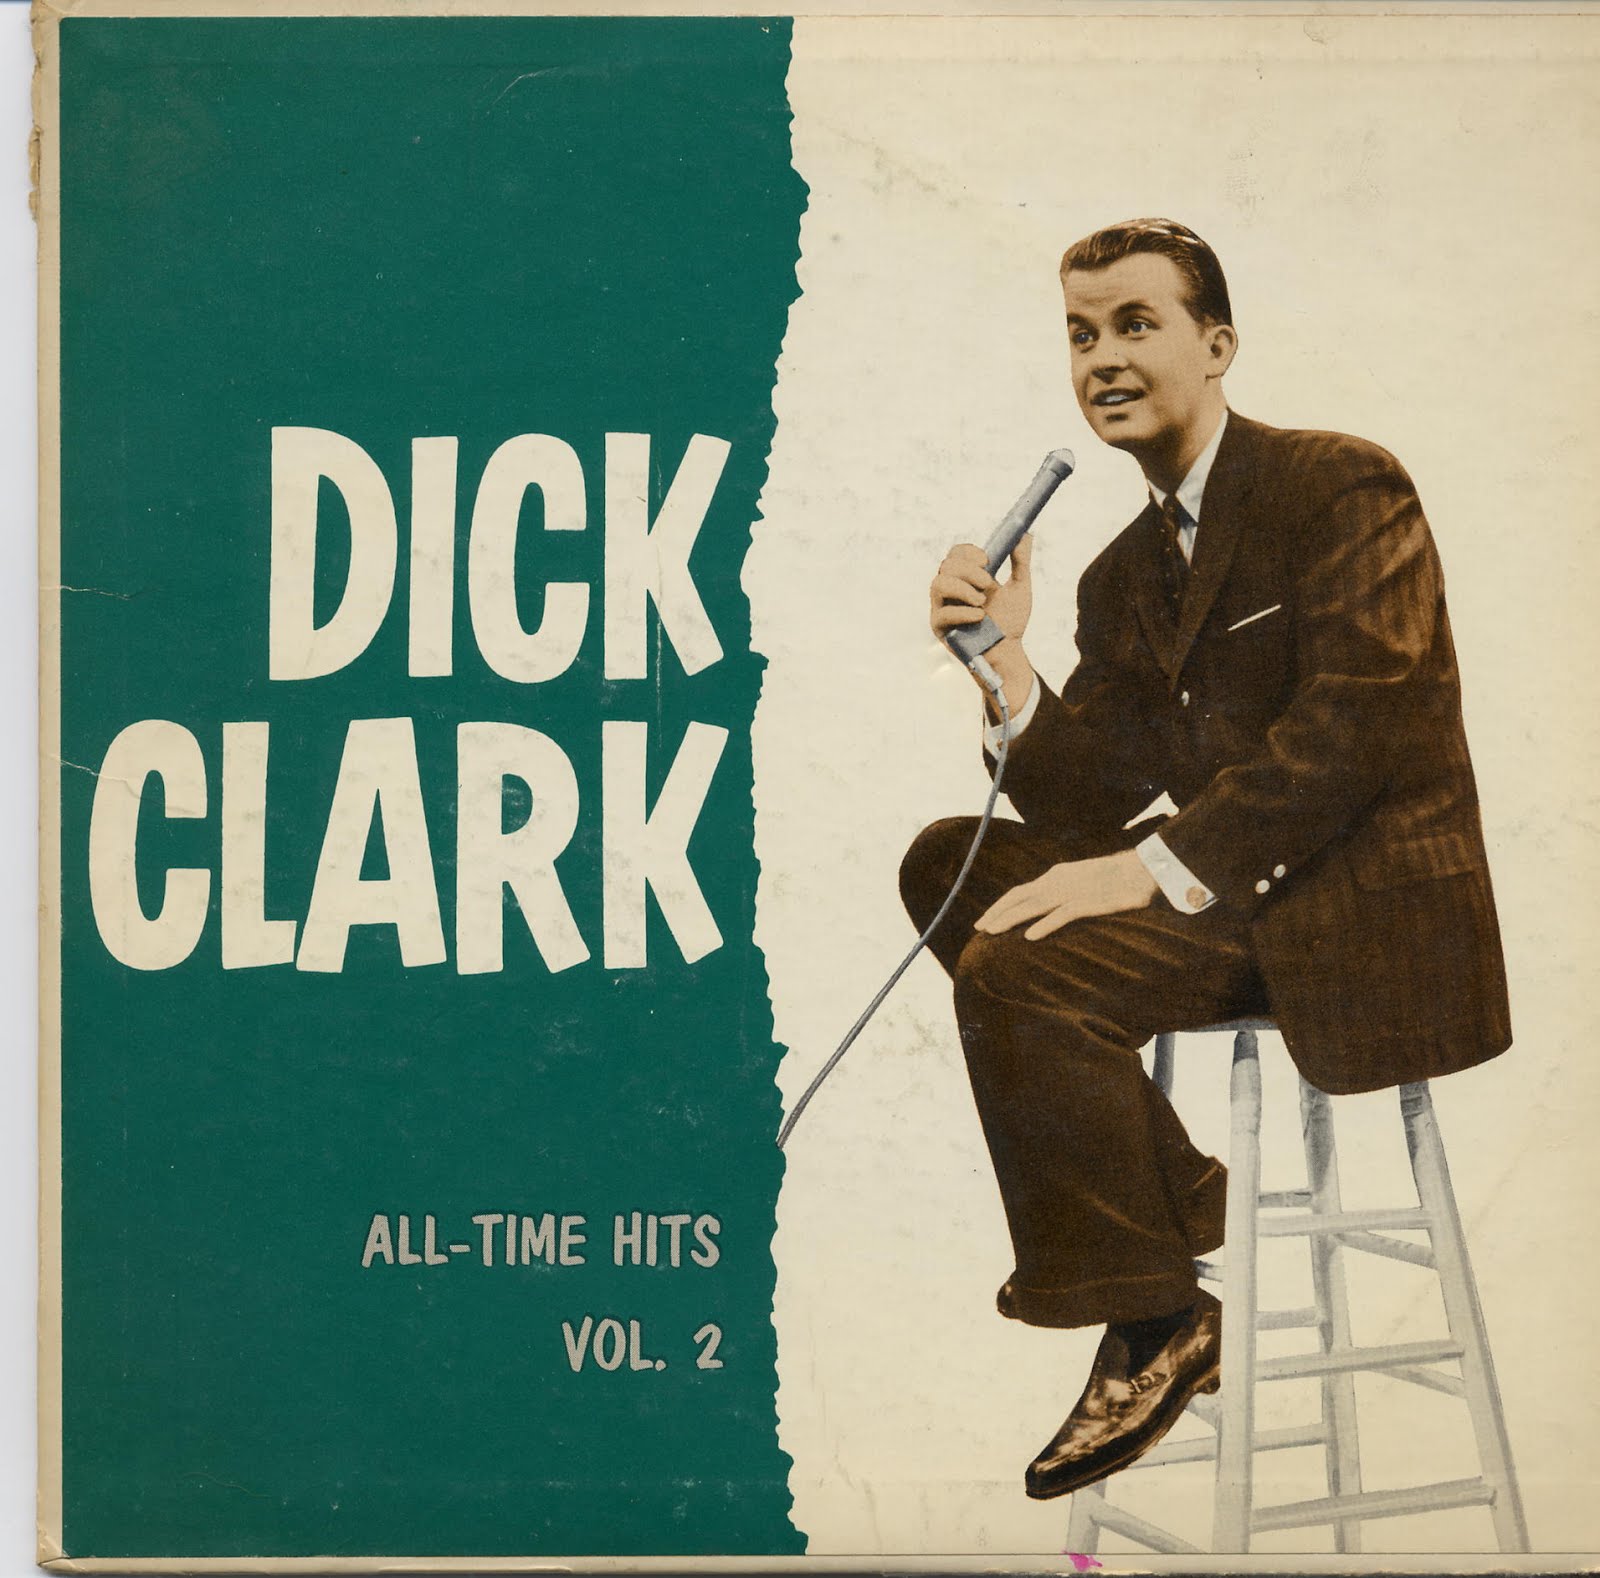 Dick clark record labels